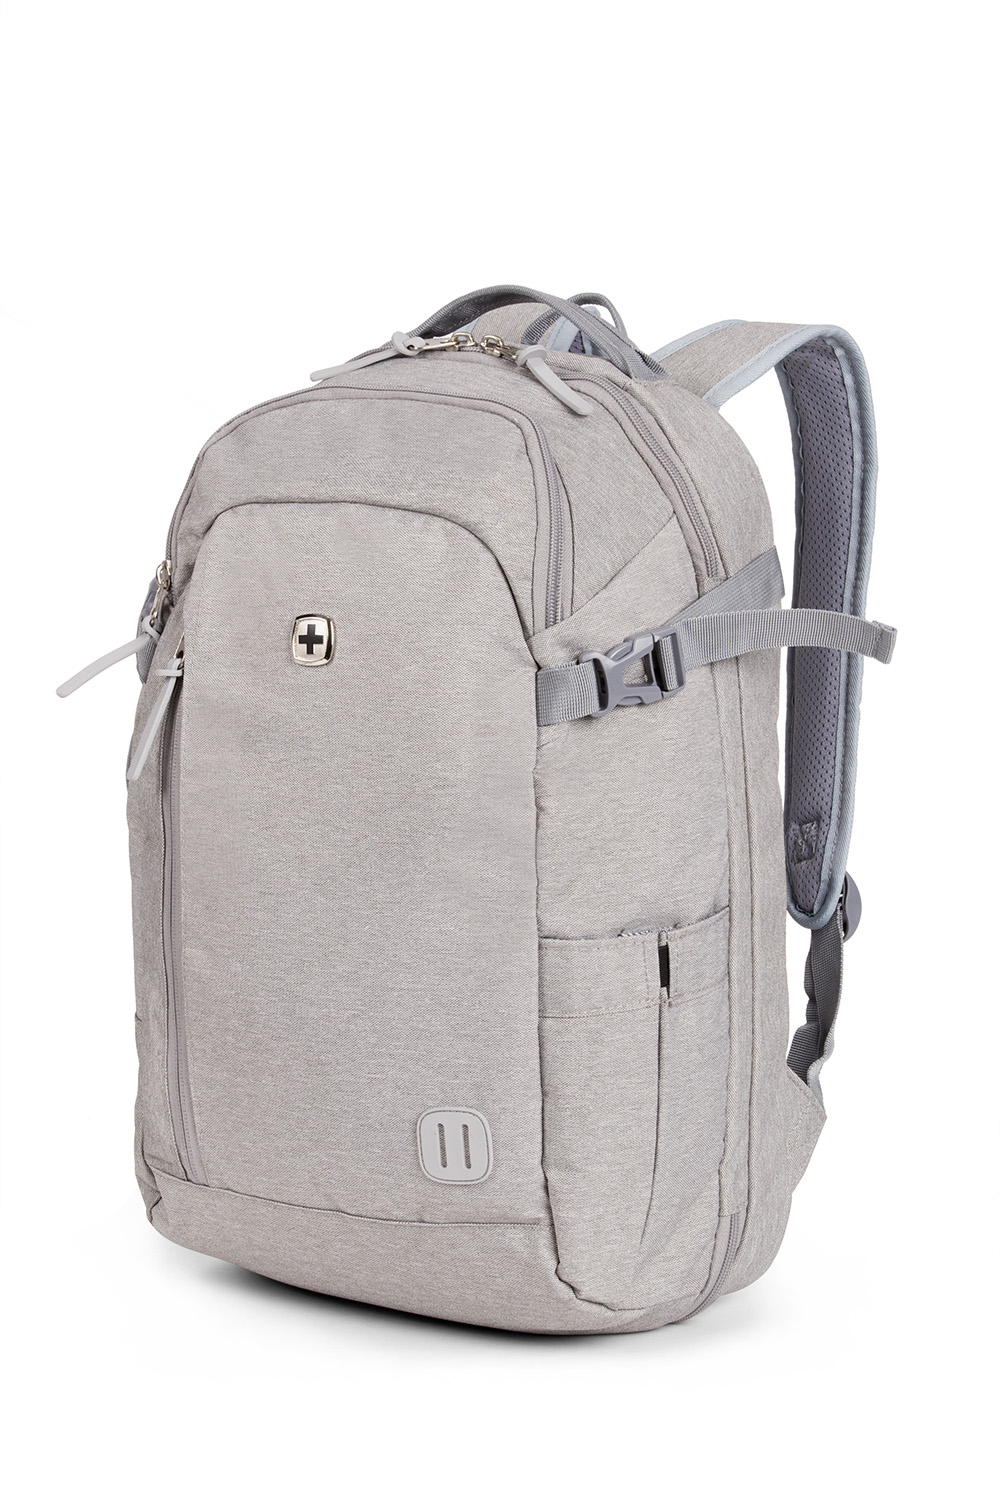 a backpack